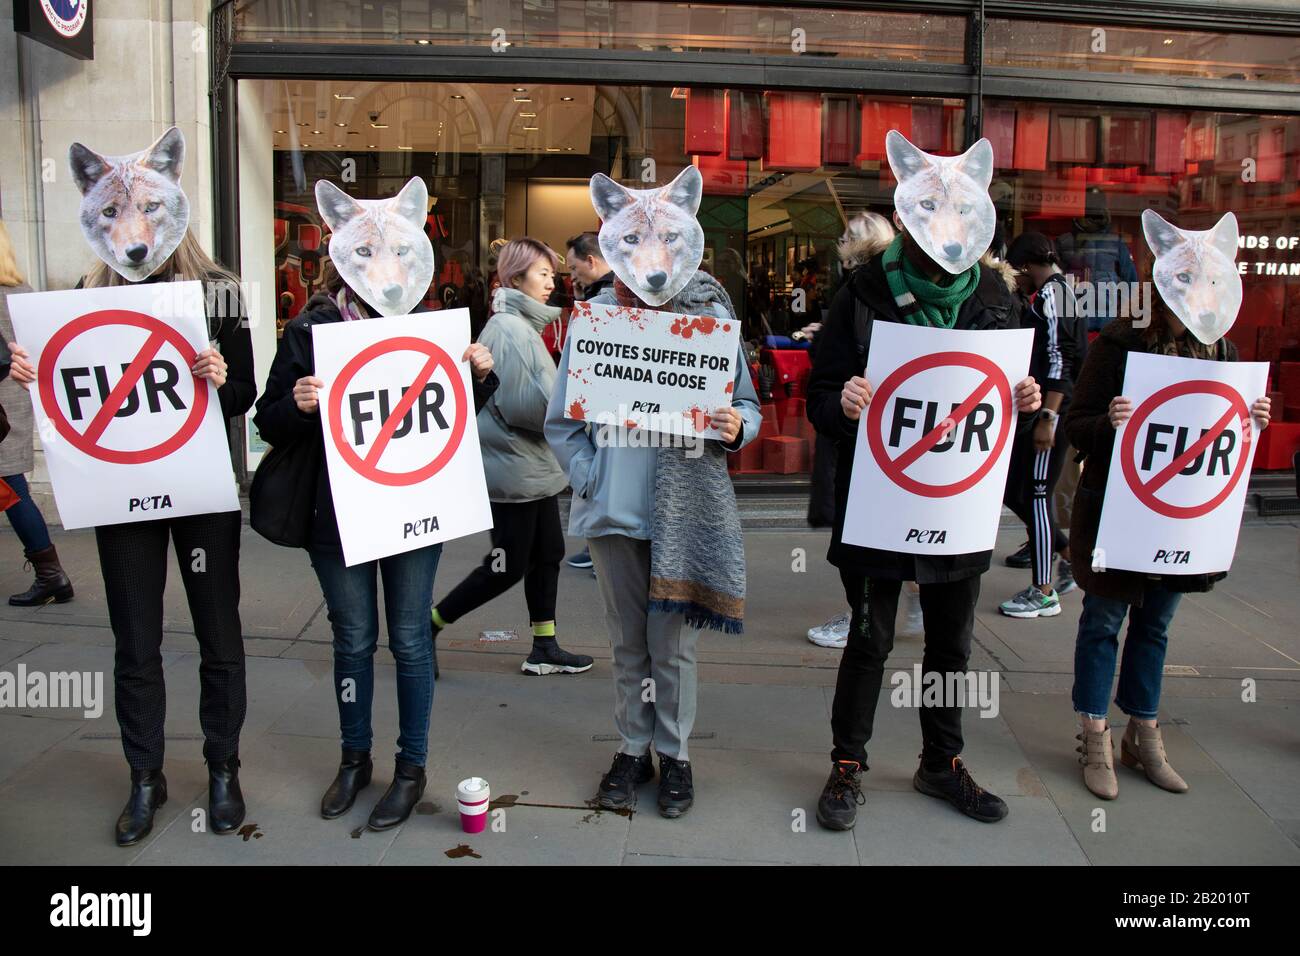 Des manifestants contre la cruauté envers les animaux portant des masques  Coyote en signe de protestation devant la boutique de la Bernache du Canada  sur Regent Street en raison de l'utilisation de